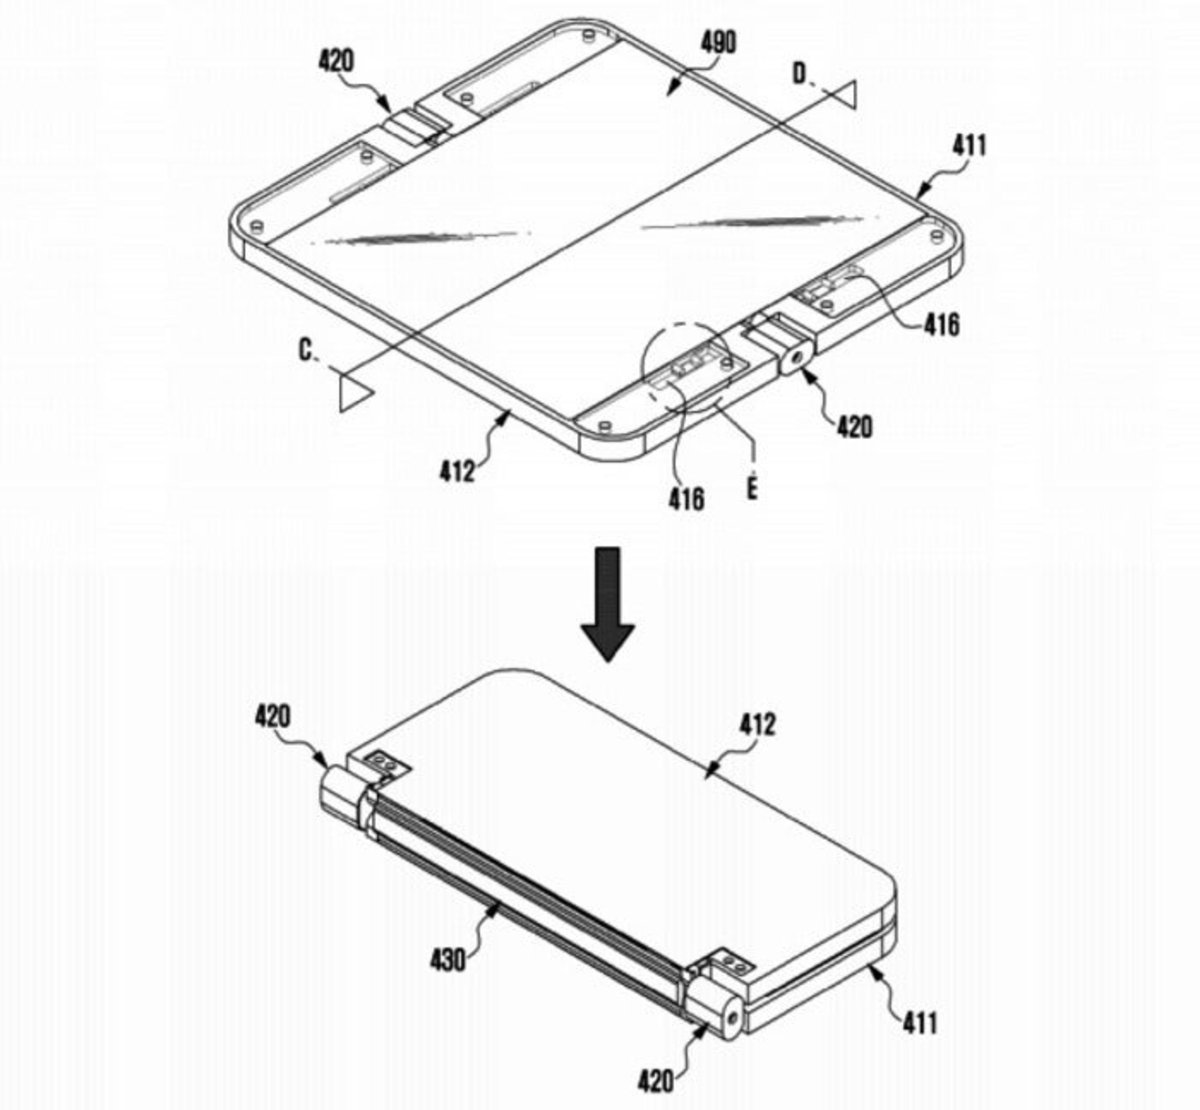 Samsung creó un sistema de bisagras para sus dispositivos plegables según estas patentes